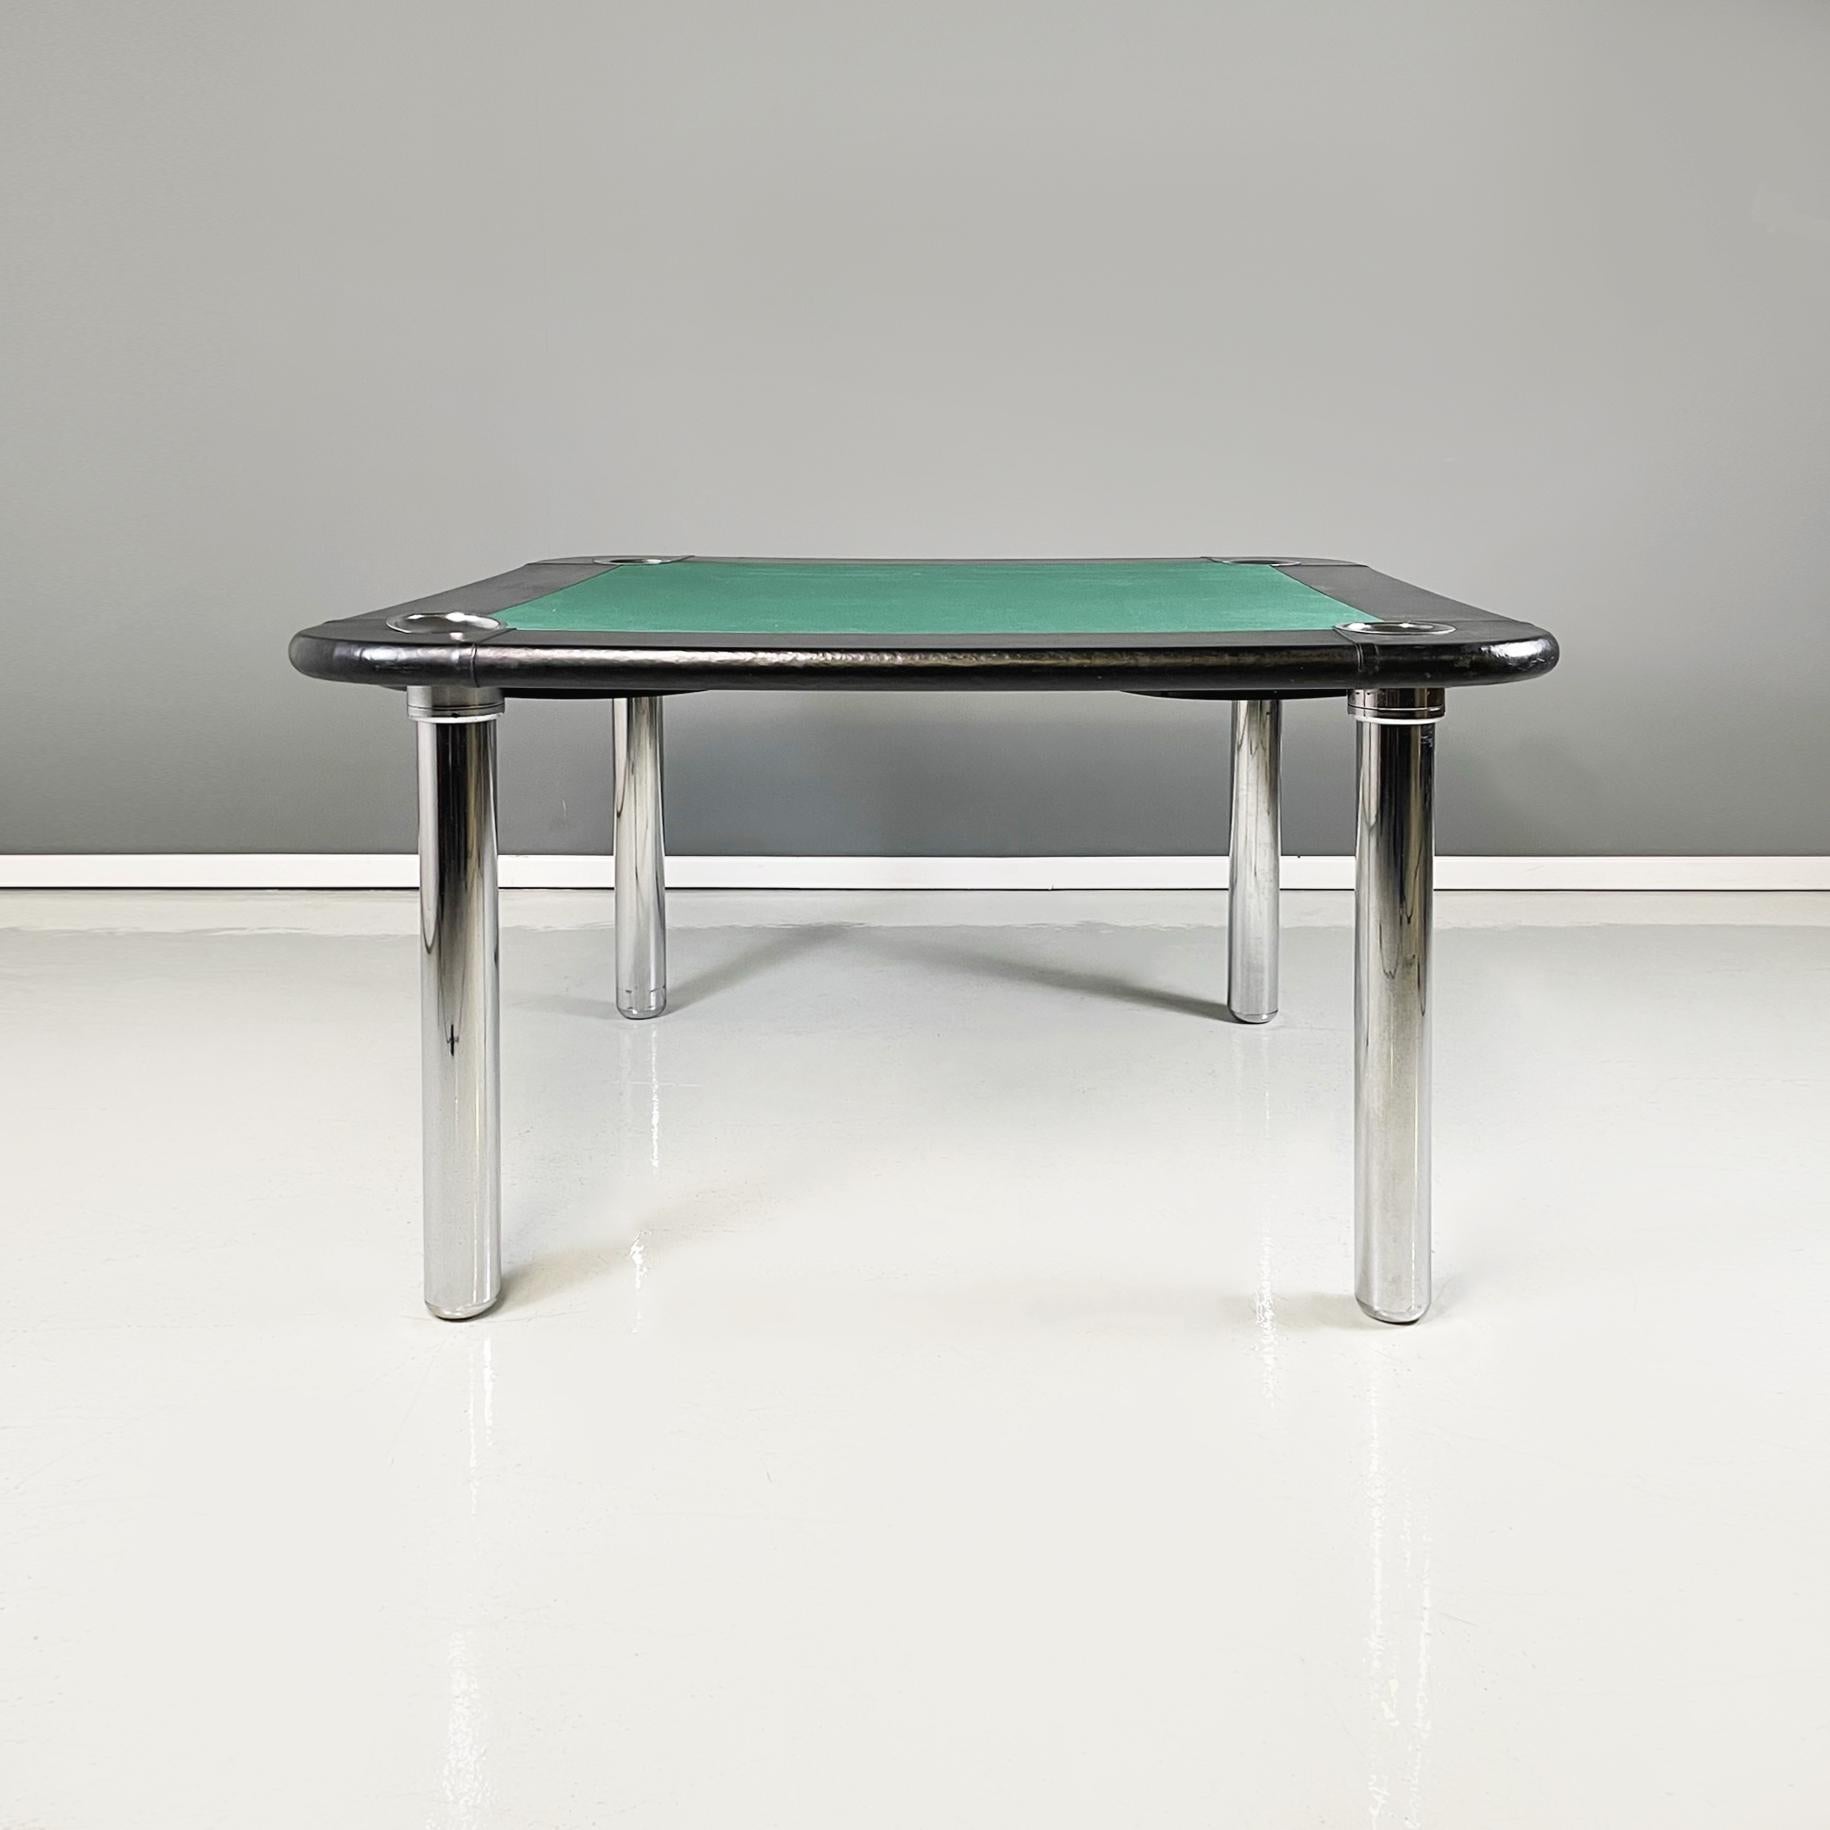 Italienischer moderner Spieltisch aus grünem Stoff, schwarzem Leder und verchromtem Stahl, 1970er Jahre
Spieltisch mit quadratischer Platte mit abgerundeten Ecken: in der Mitte ein Quadrat aus grünem Stoff und schwarzem Leder an den Rändern. An den